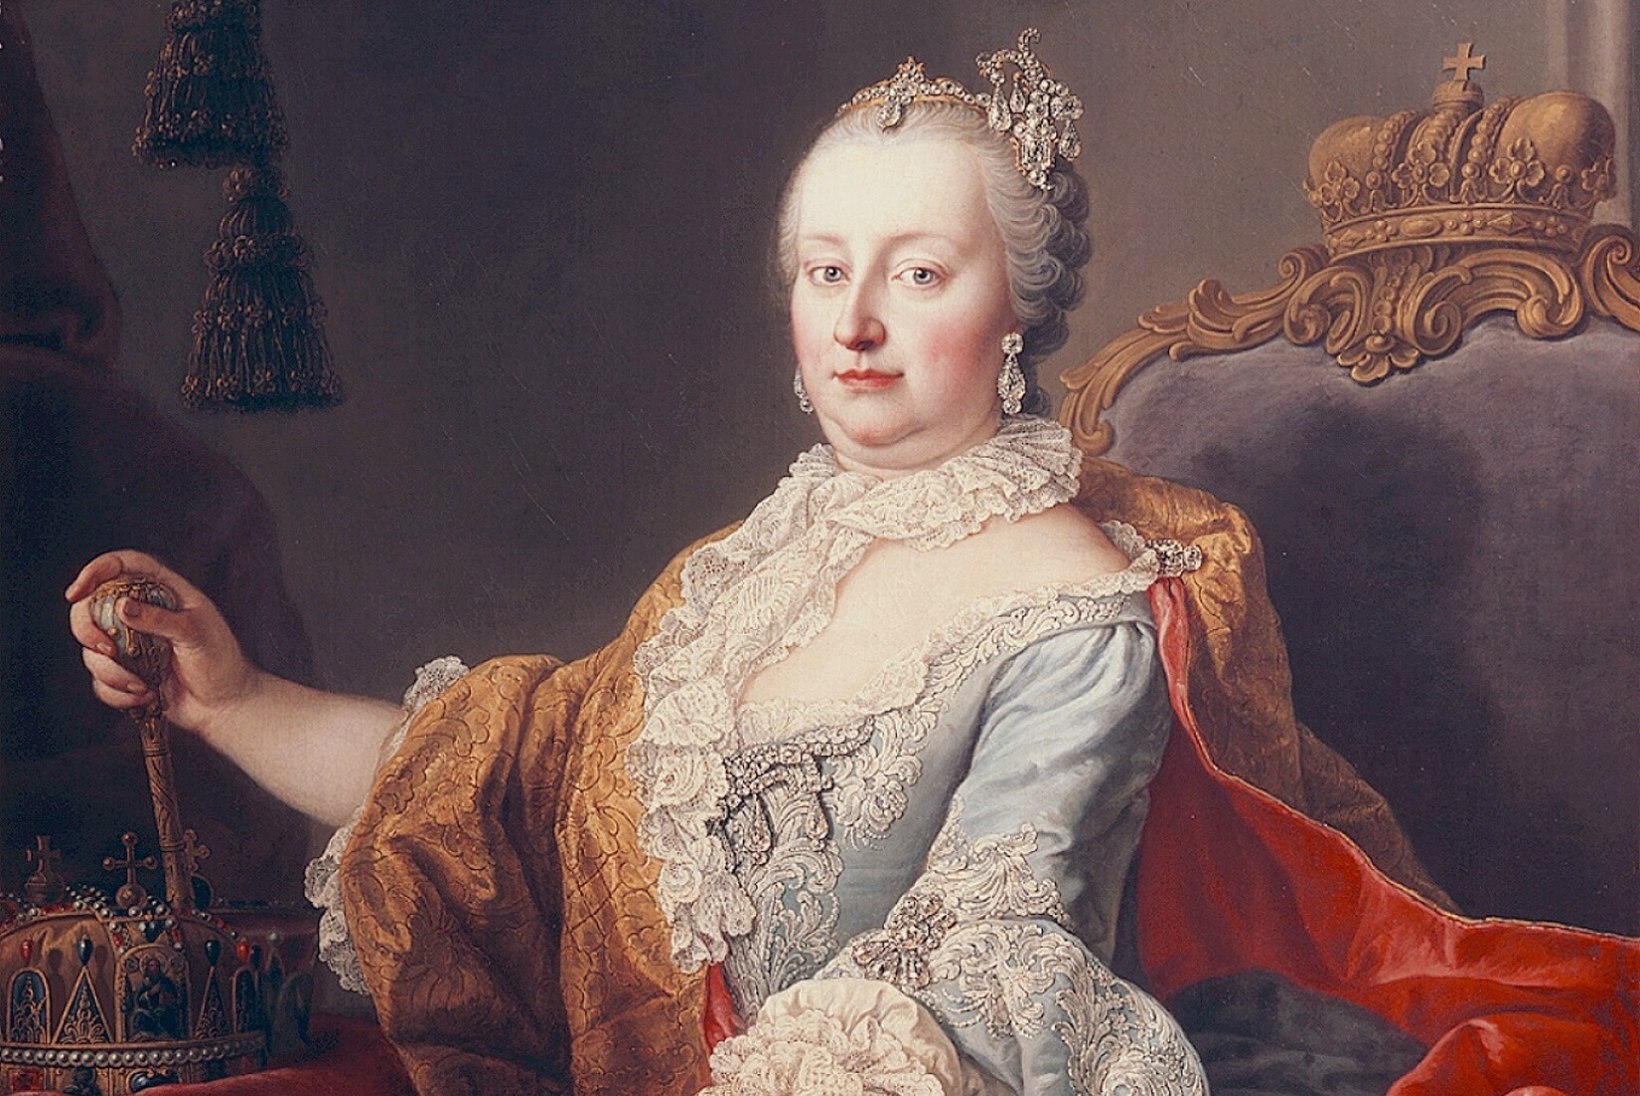 EUROOPA ÄMM: keisrinna Maria Theresia tõi ilmale 16 last, kuid lõpus tuli abielu mõõgaga koos hoida